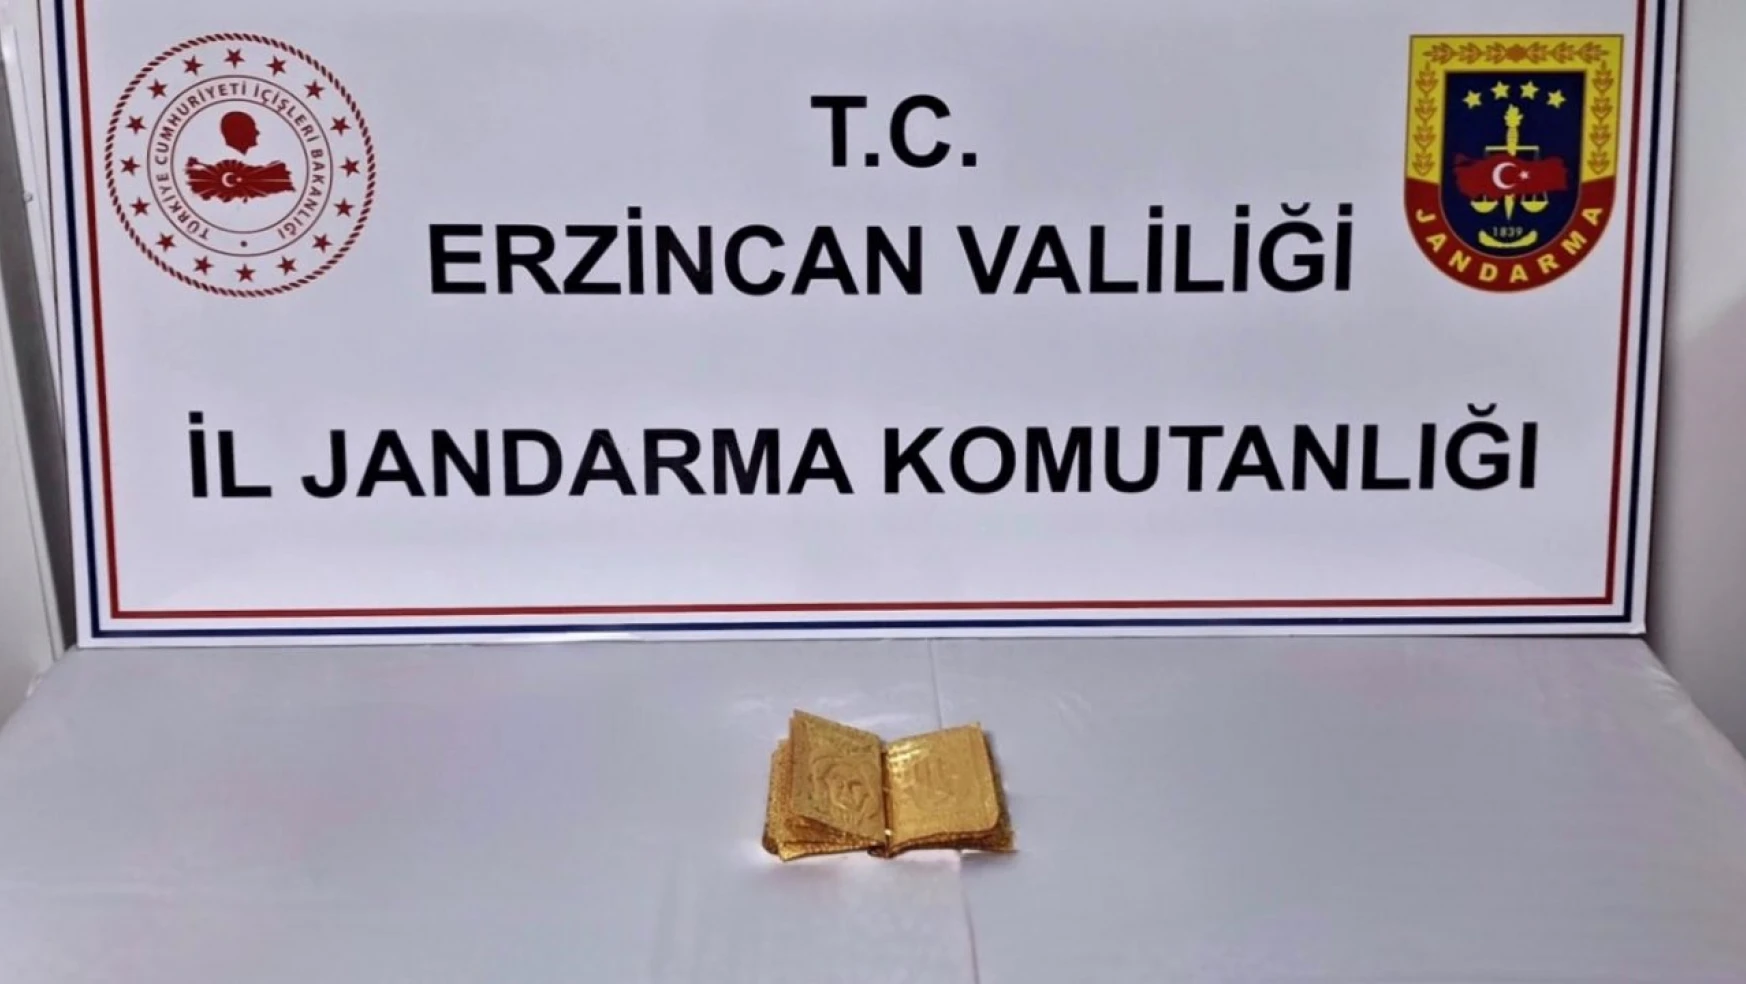 Erzincan'da altın sayfalı kitap ele geçirildi